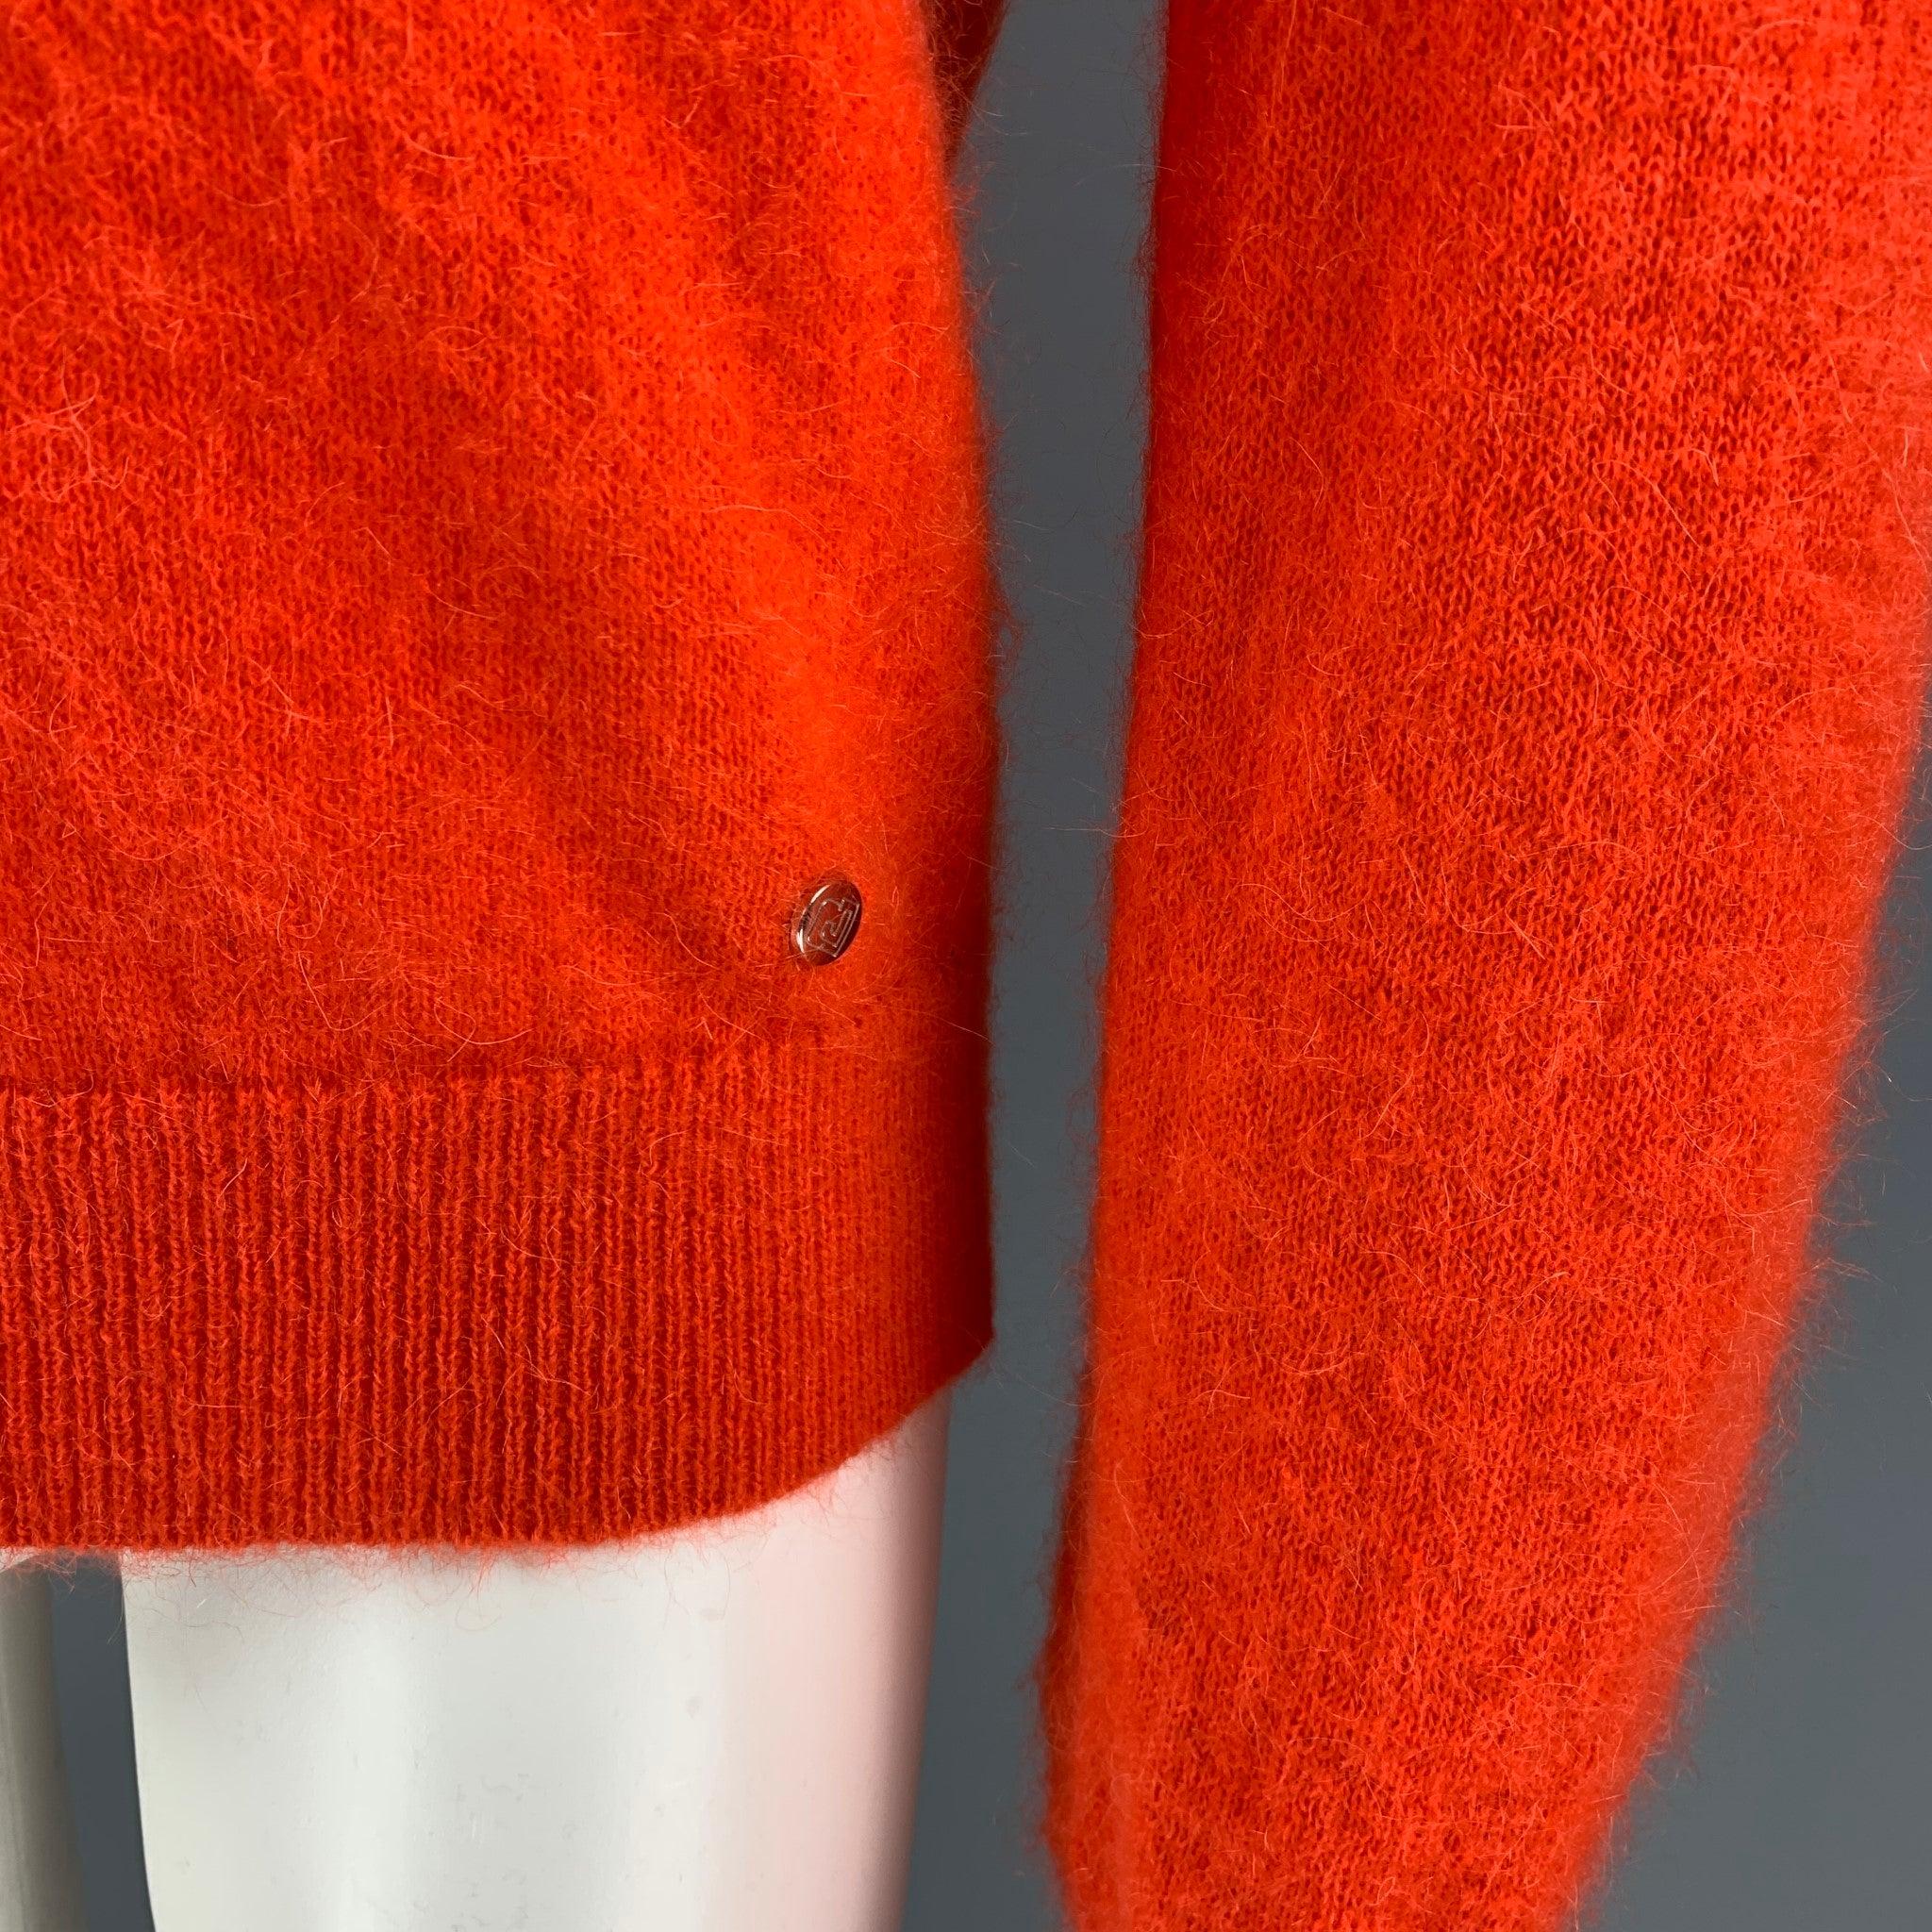 PACO RABANNE Pullover aus einer orangefarbenen Mohairmischung mit Rollkragen.
Ausgezeichnet
Gebrauchtes Zustand. 

Markiert:   M  

Abmessungen: 
 
Schultern: 16 Zoll Brustkorb:
40 Zoll Ärmel: 30 Zoll Länge: 25,5 Zoll 
  
  
 
Referenz: